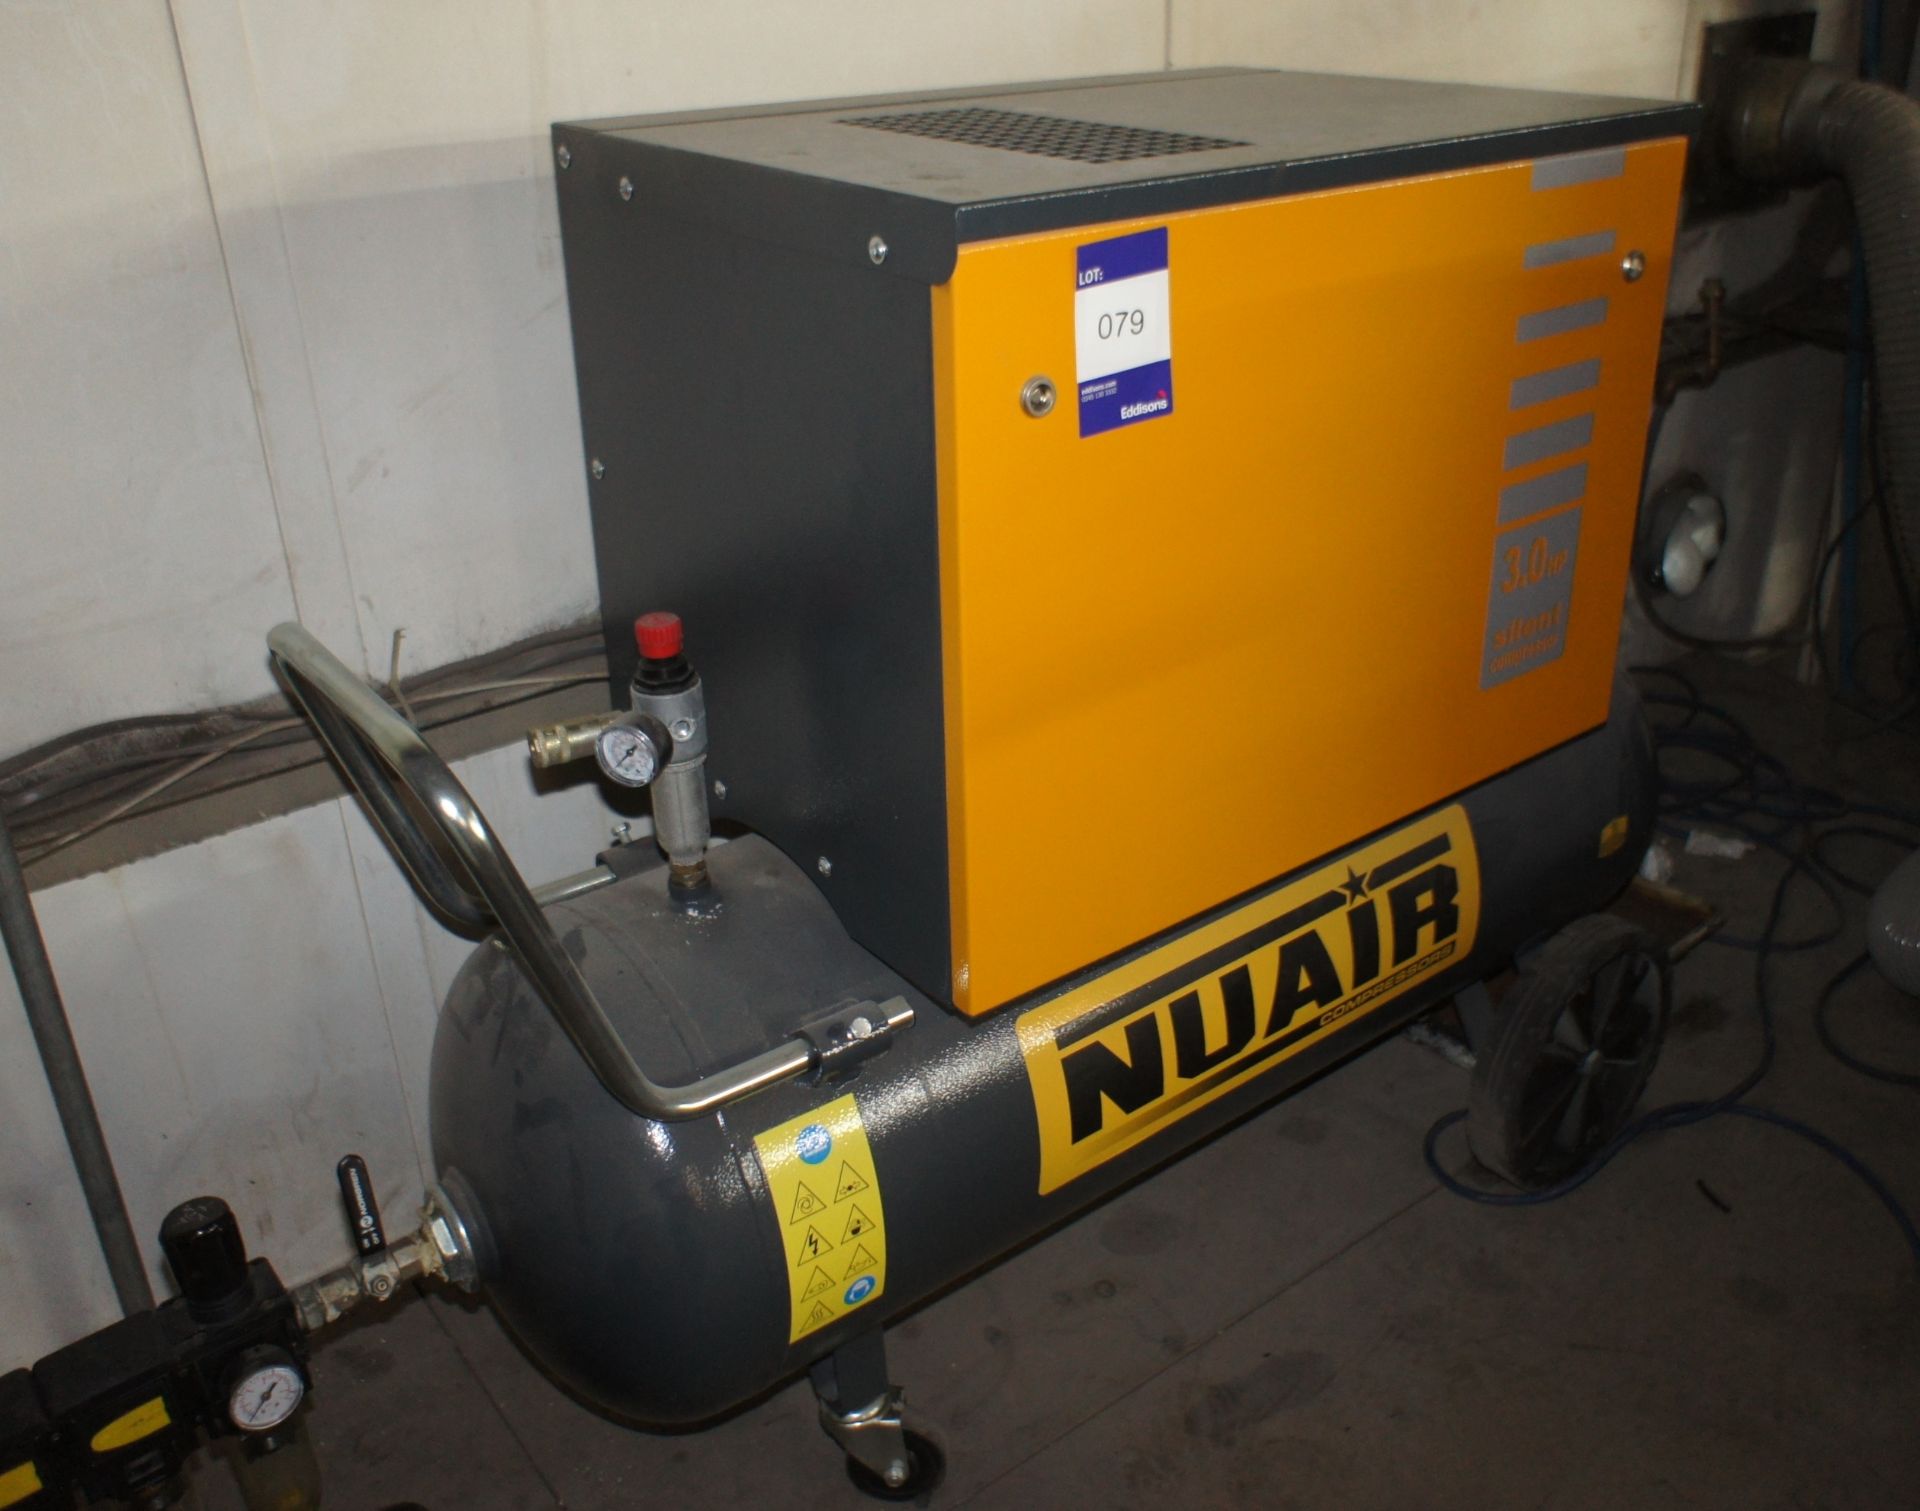 Nuair B3800/3U/100G workshop compressor, year 2019